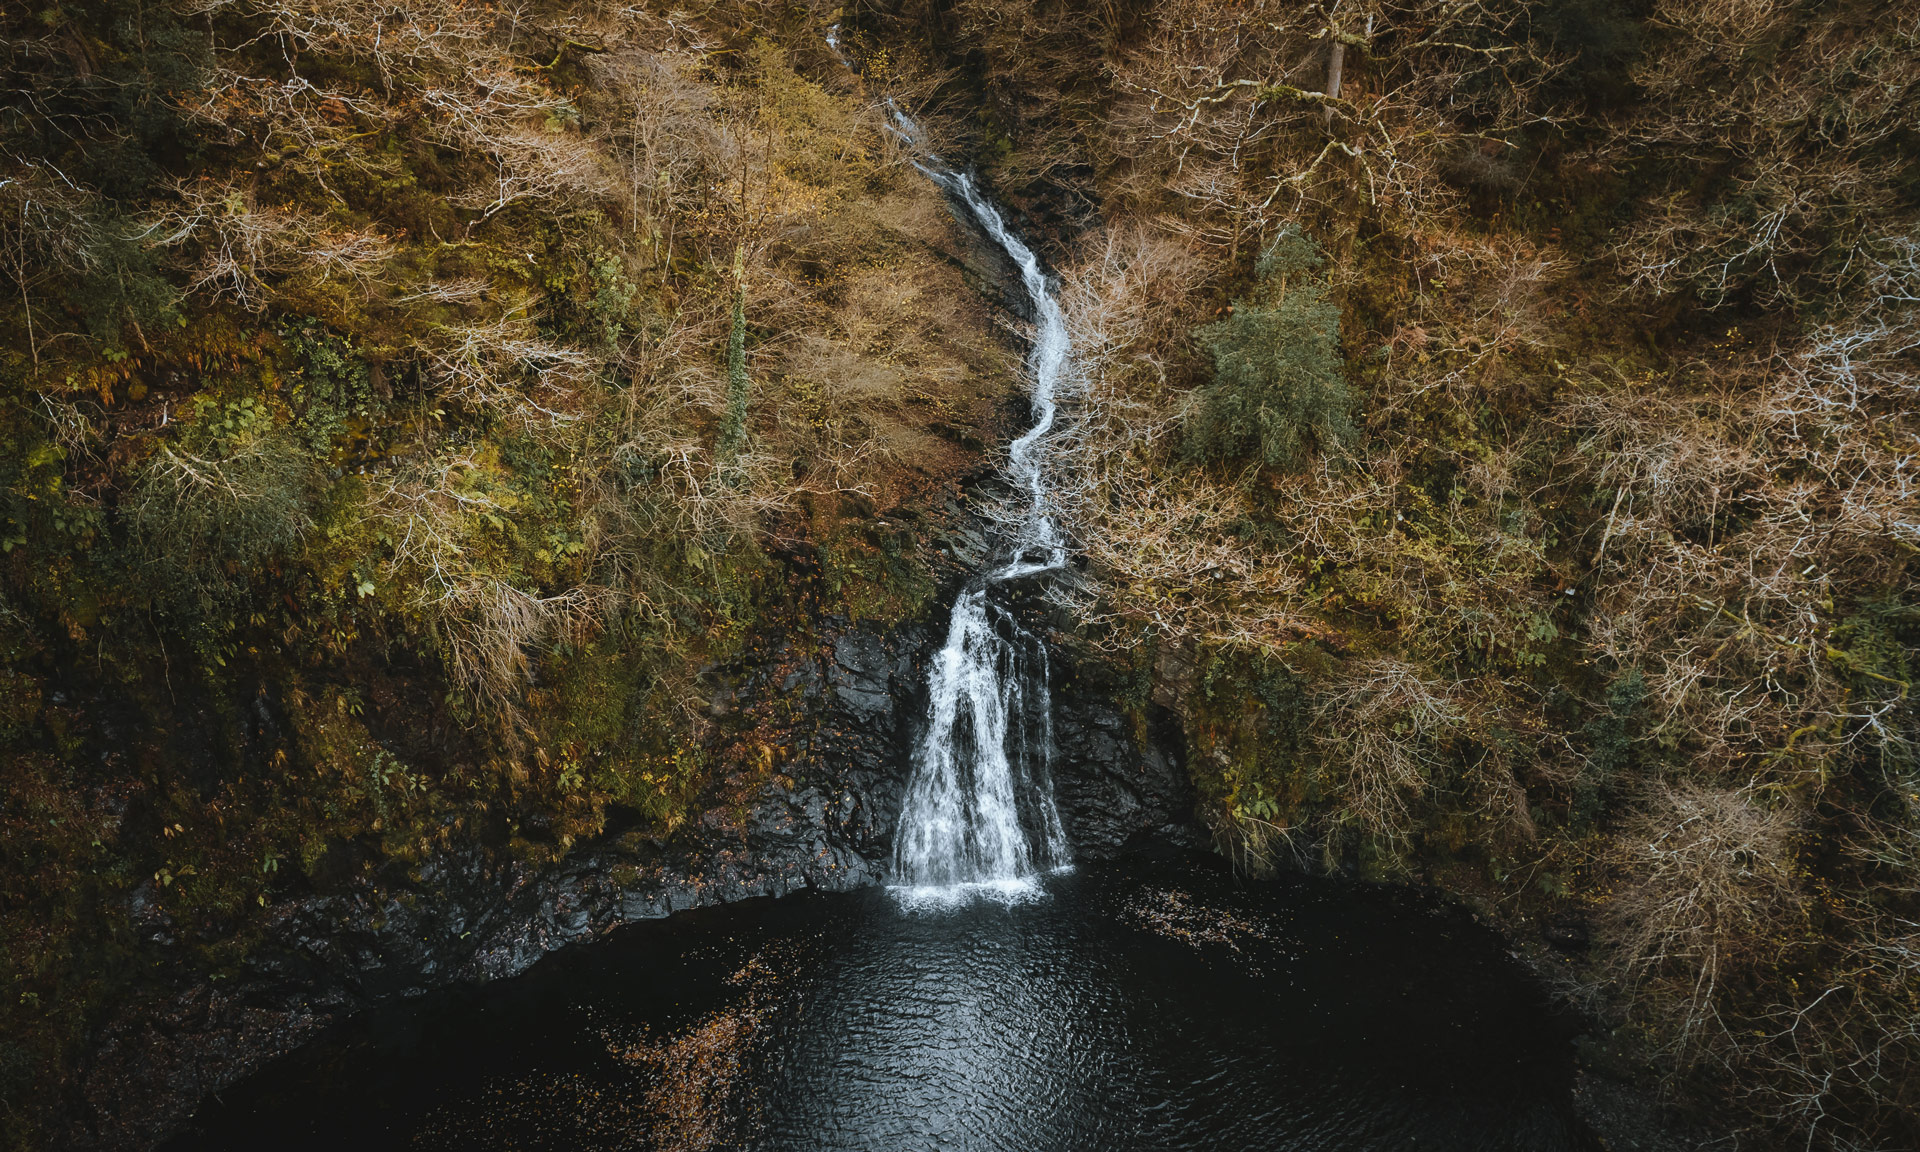 Waterfall at Felenrhyd and Llennyrch woods